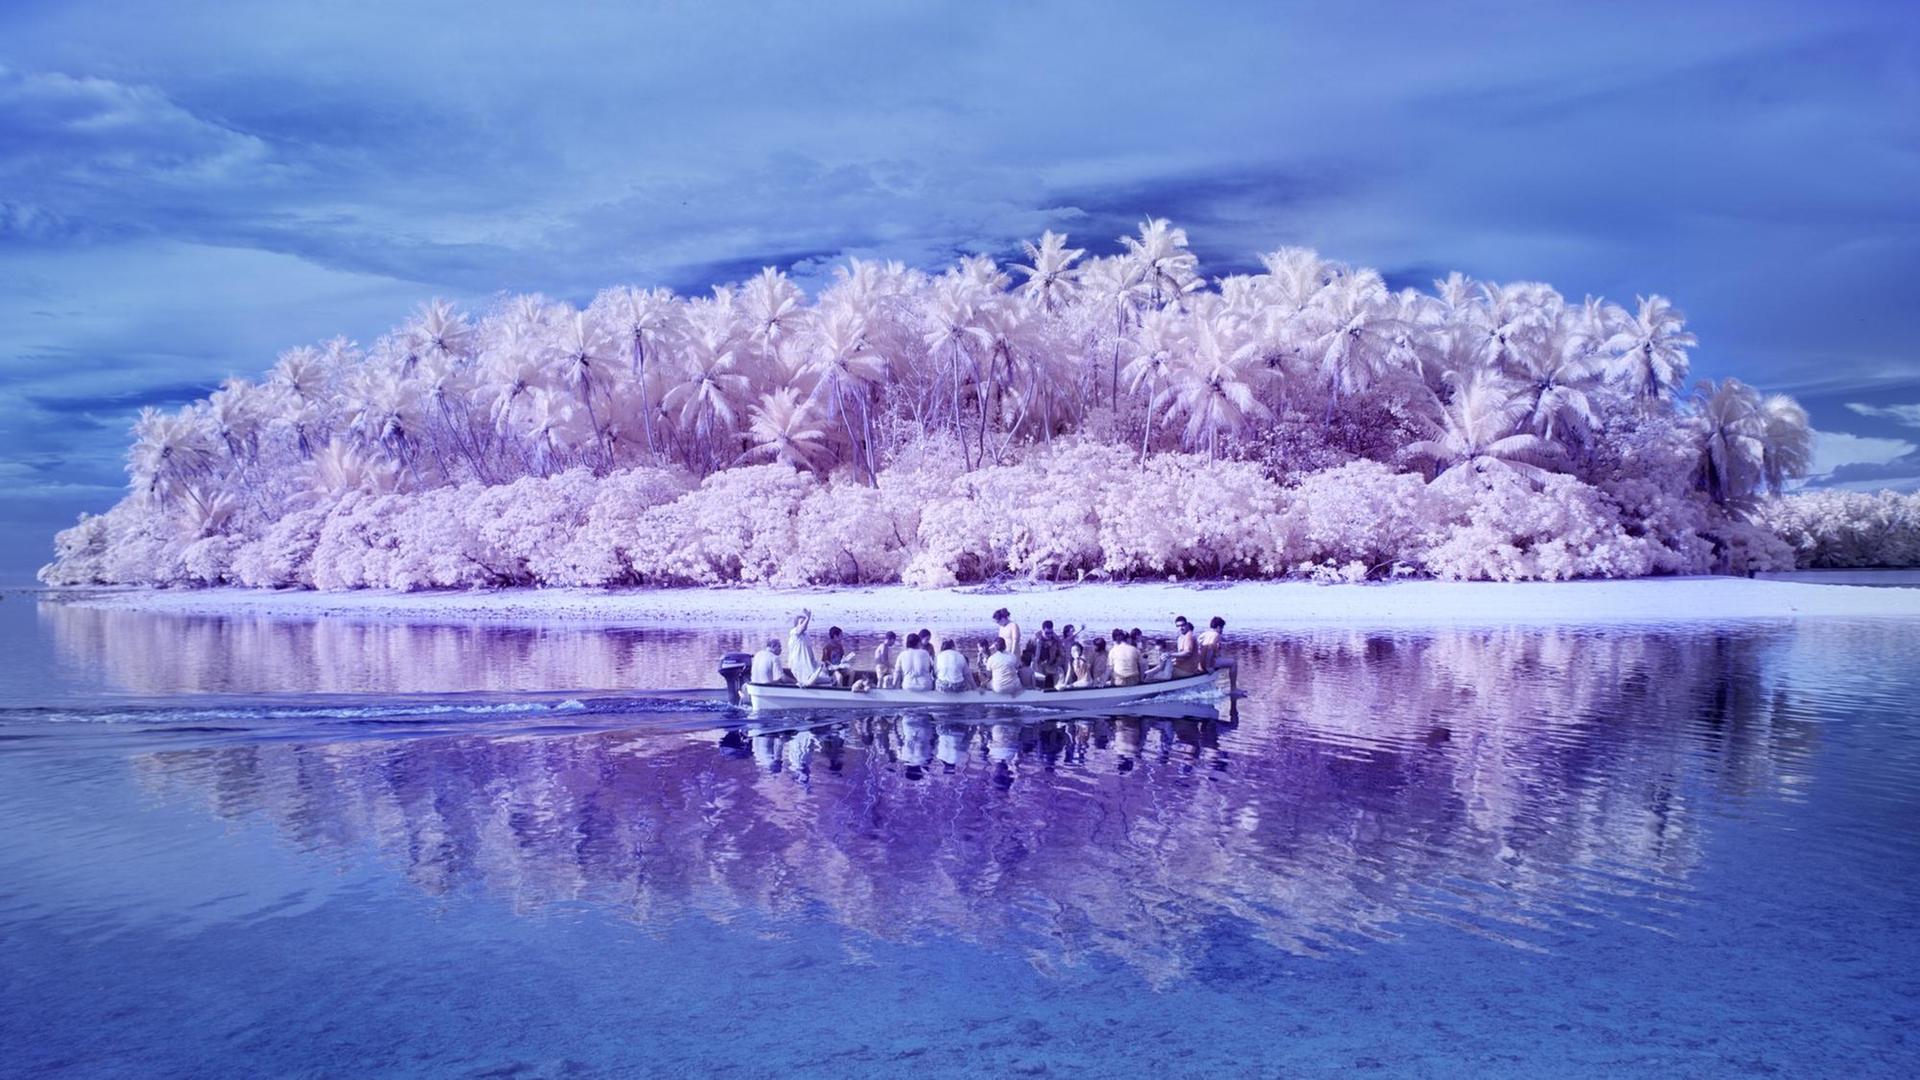 Ein Foto aus der Arbeit "Die Insel der Farbenblinden" von Susanne de Wilde eine Boot vor einer Insel in einer ganz eigenen Farbgebung.